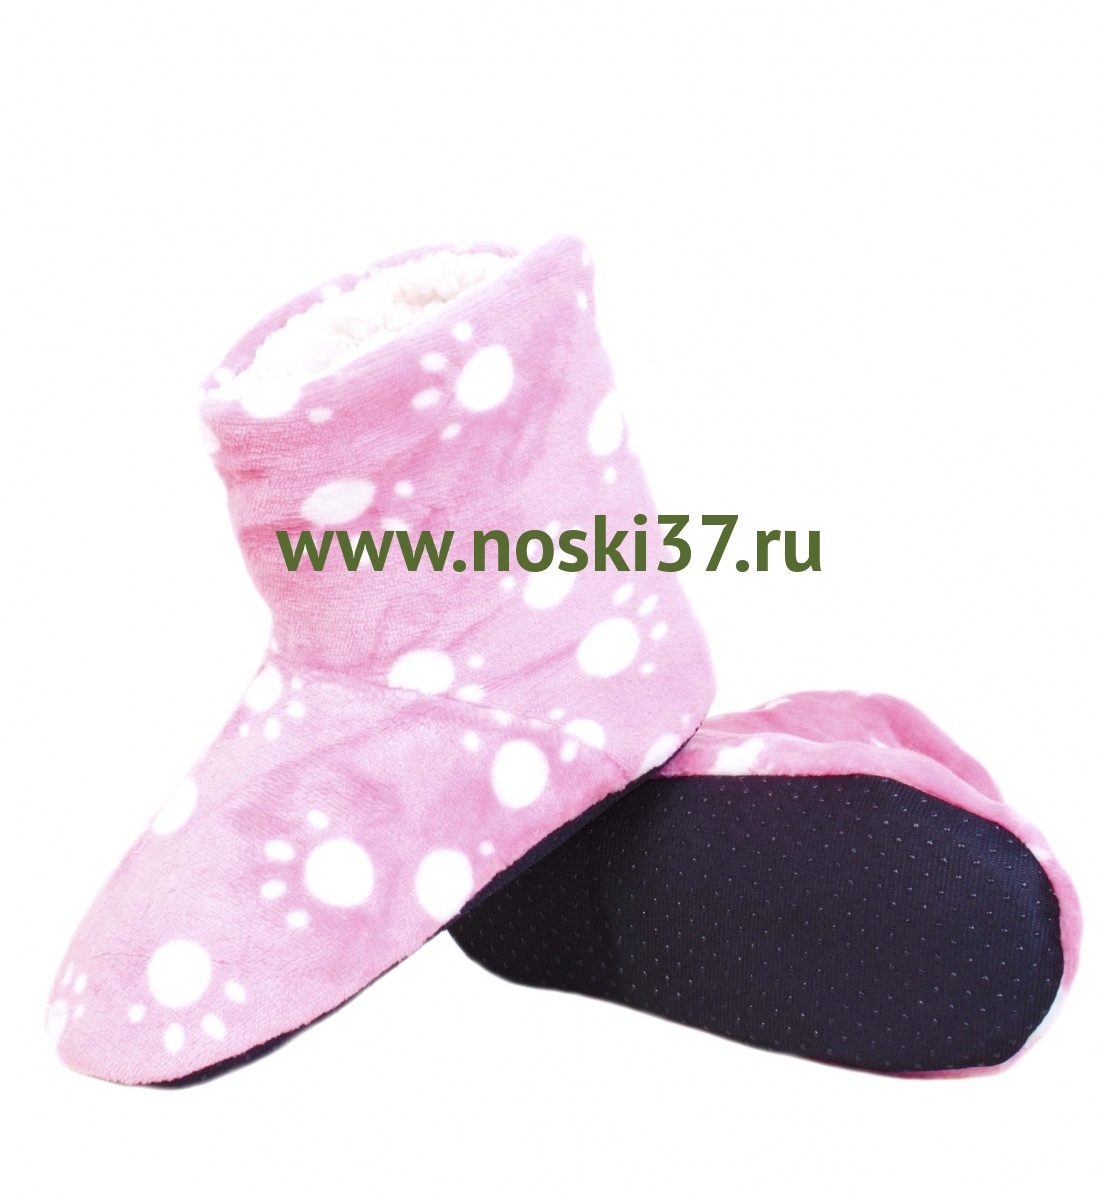 Носки- тапки женские "Socks" № 15-74 купить оптом и мелким оптом, низкие цены от магазина Комфорт(noski37) для всей семьи с доставка по всей России от производителя.